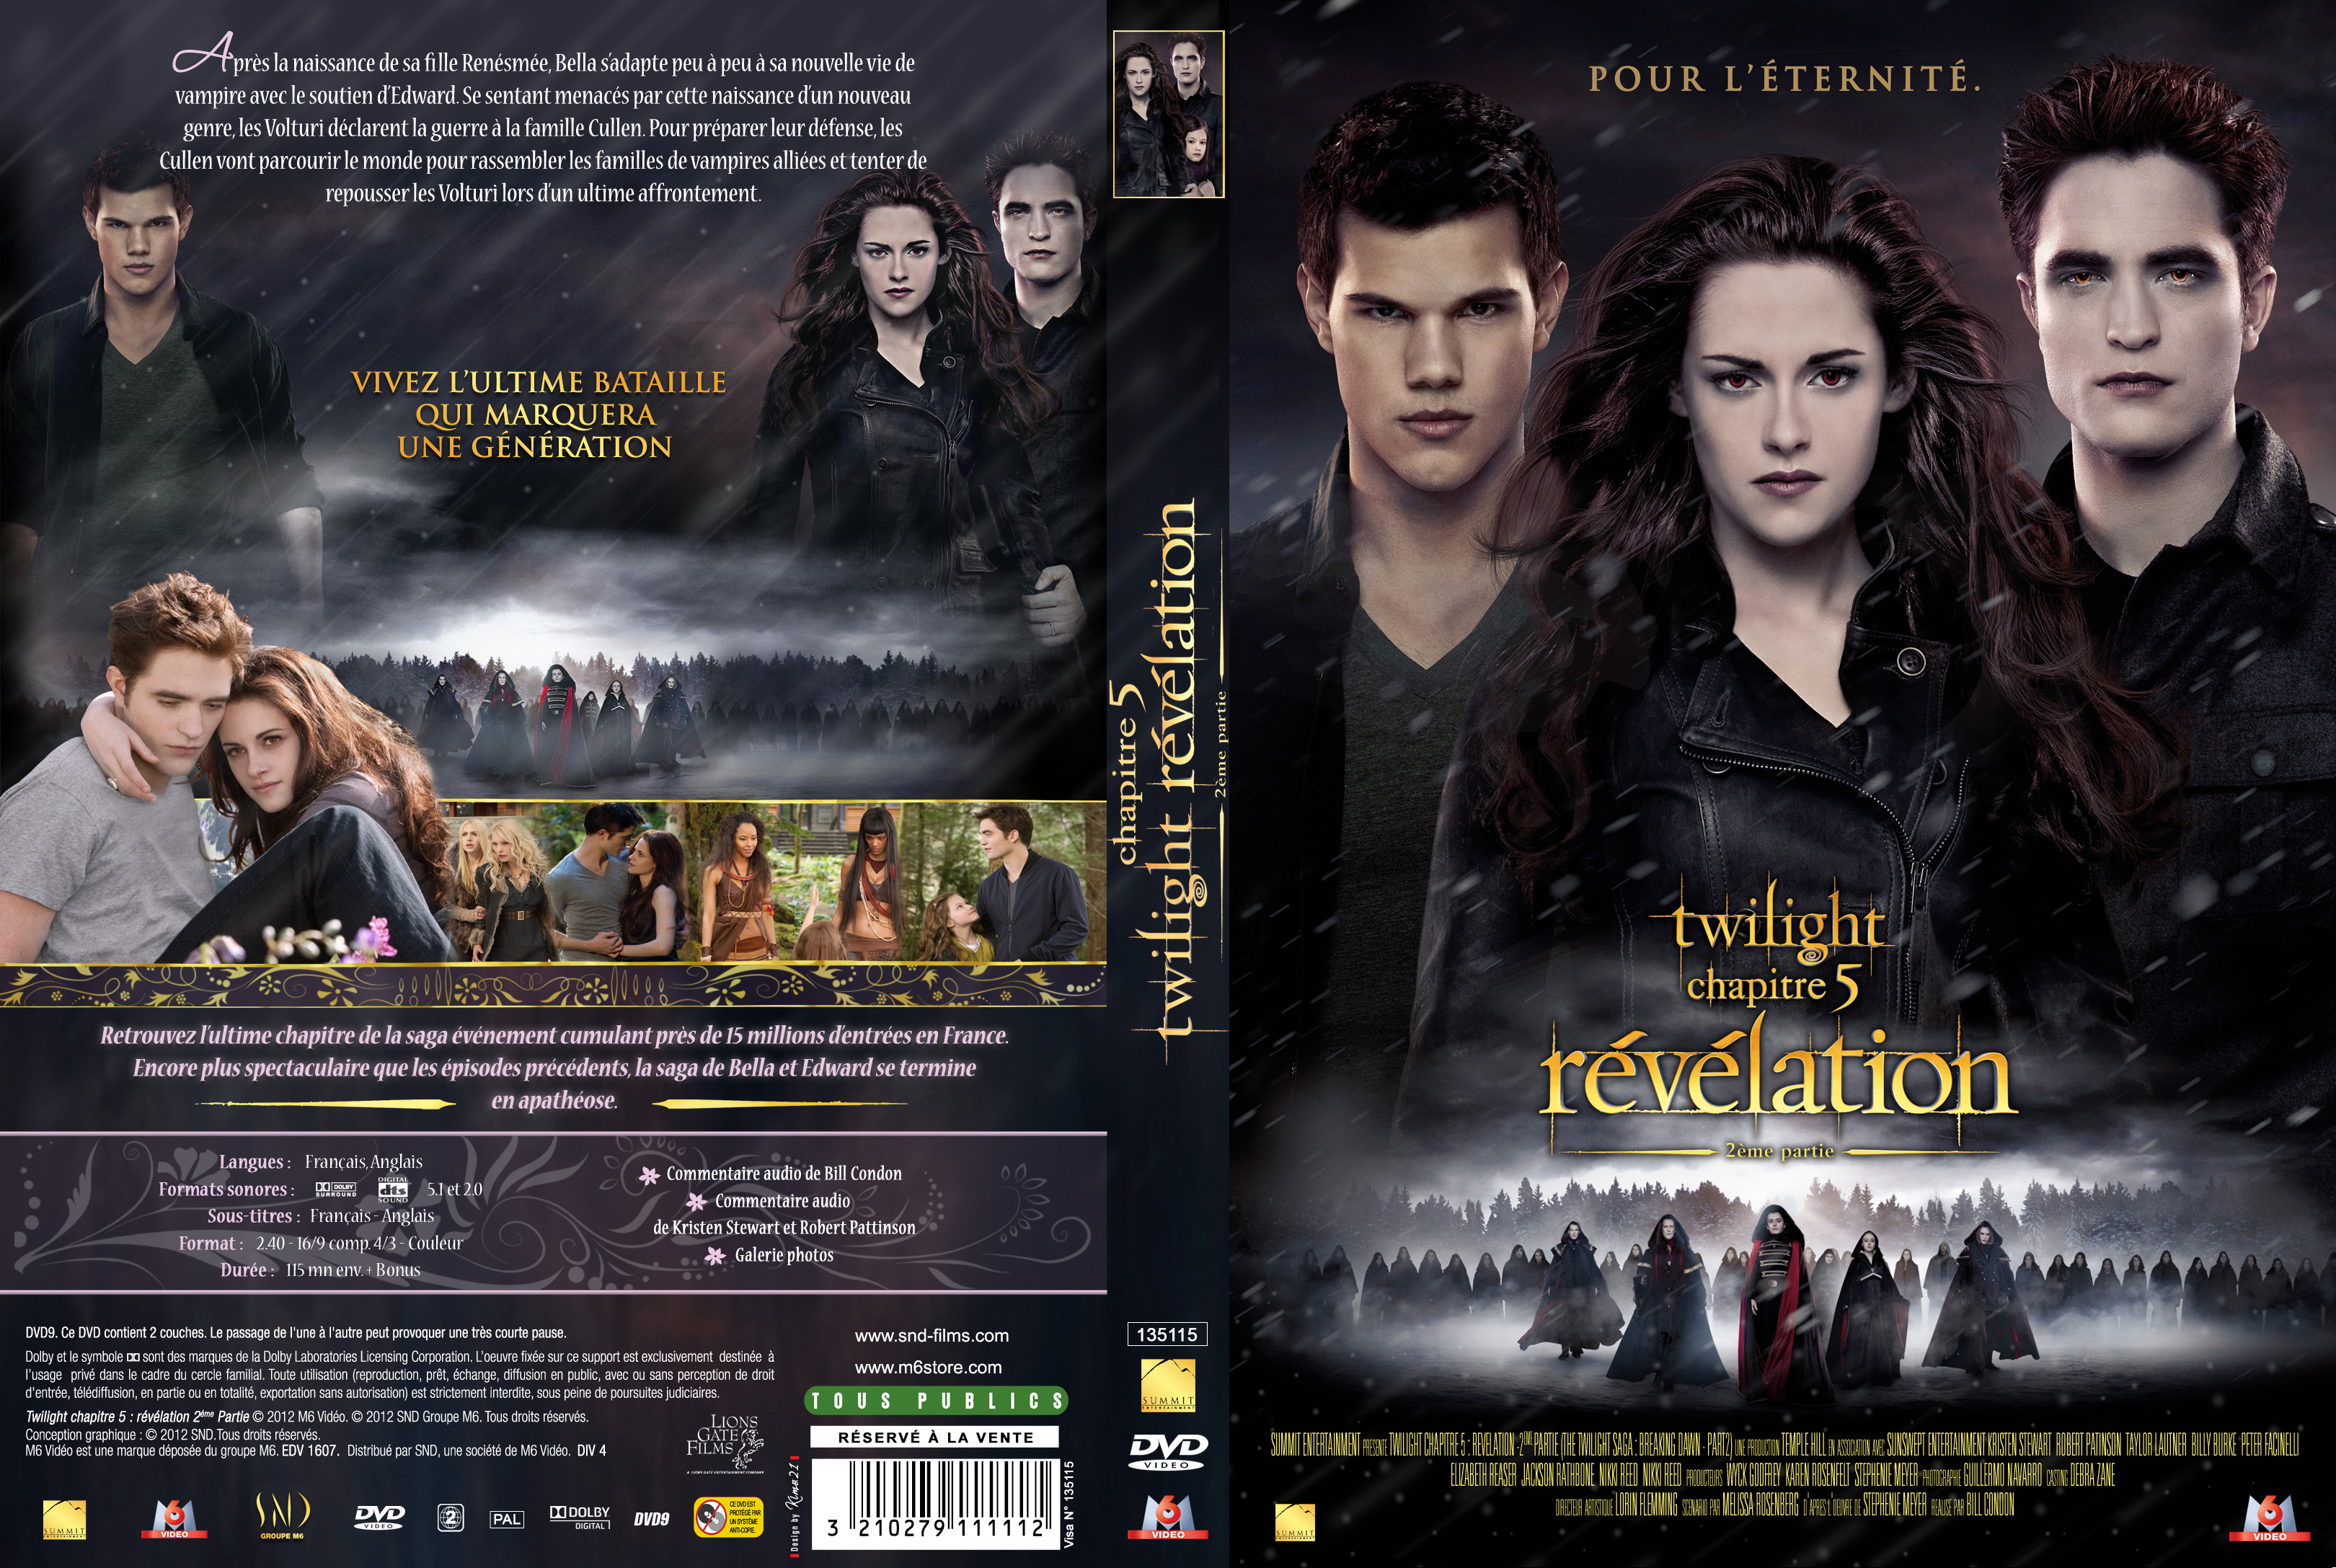 Jaquette DVD Twilight Chapitre 5 : Révélation 2e partie custom